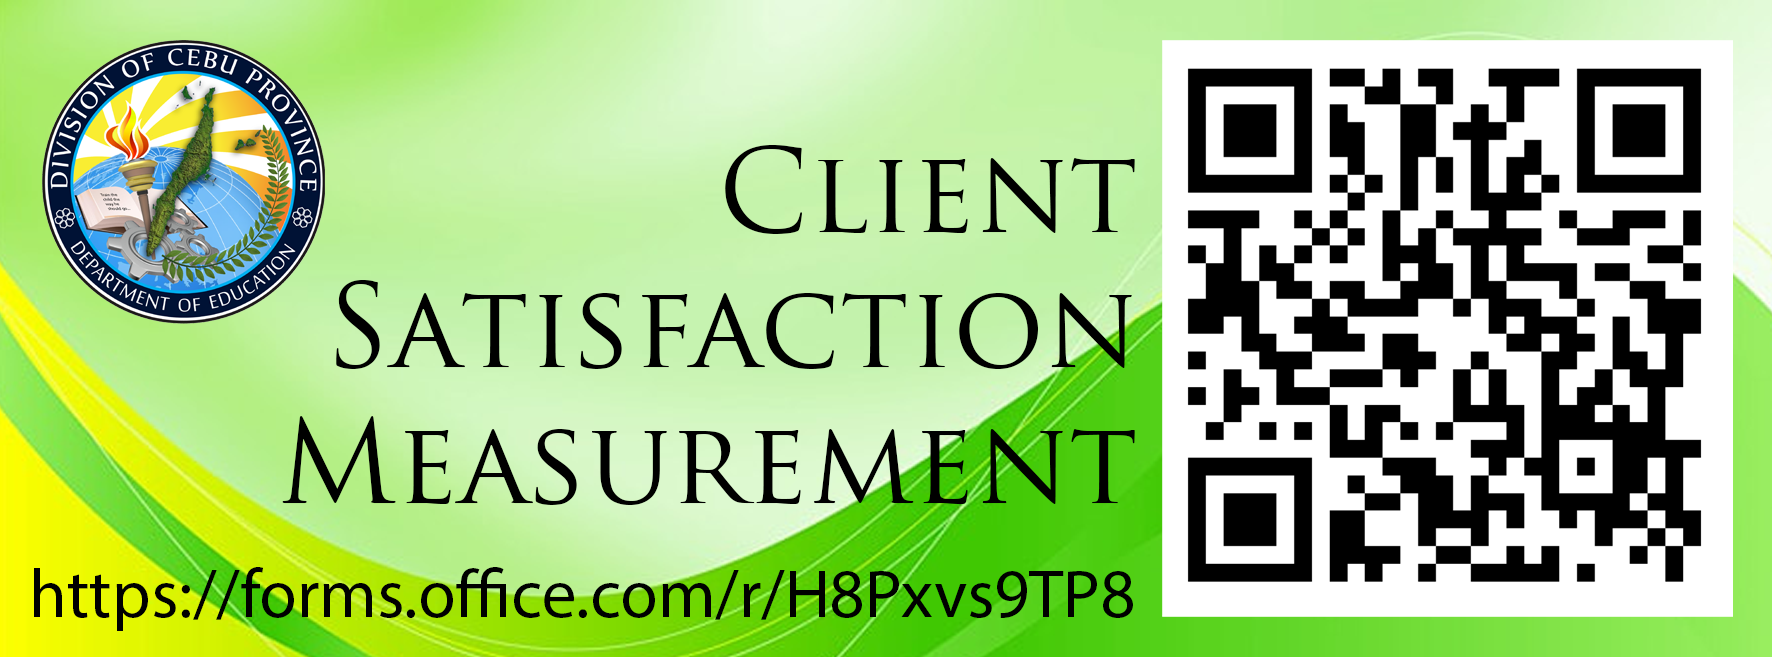 Client Satisfaction Measurement